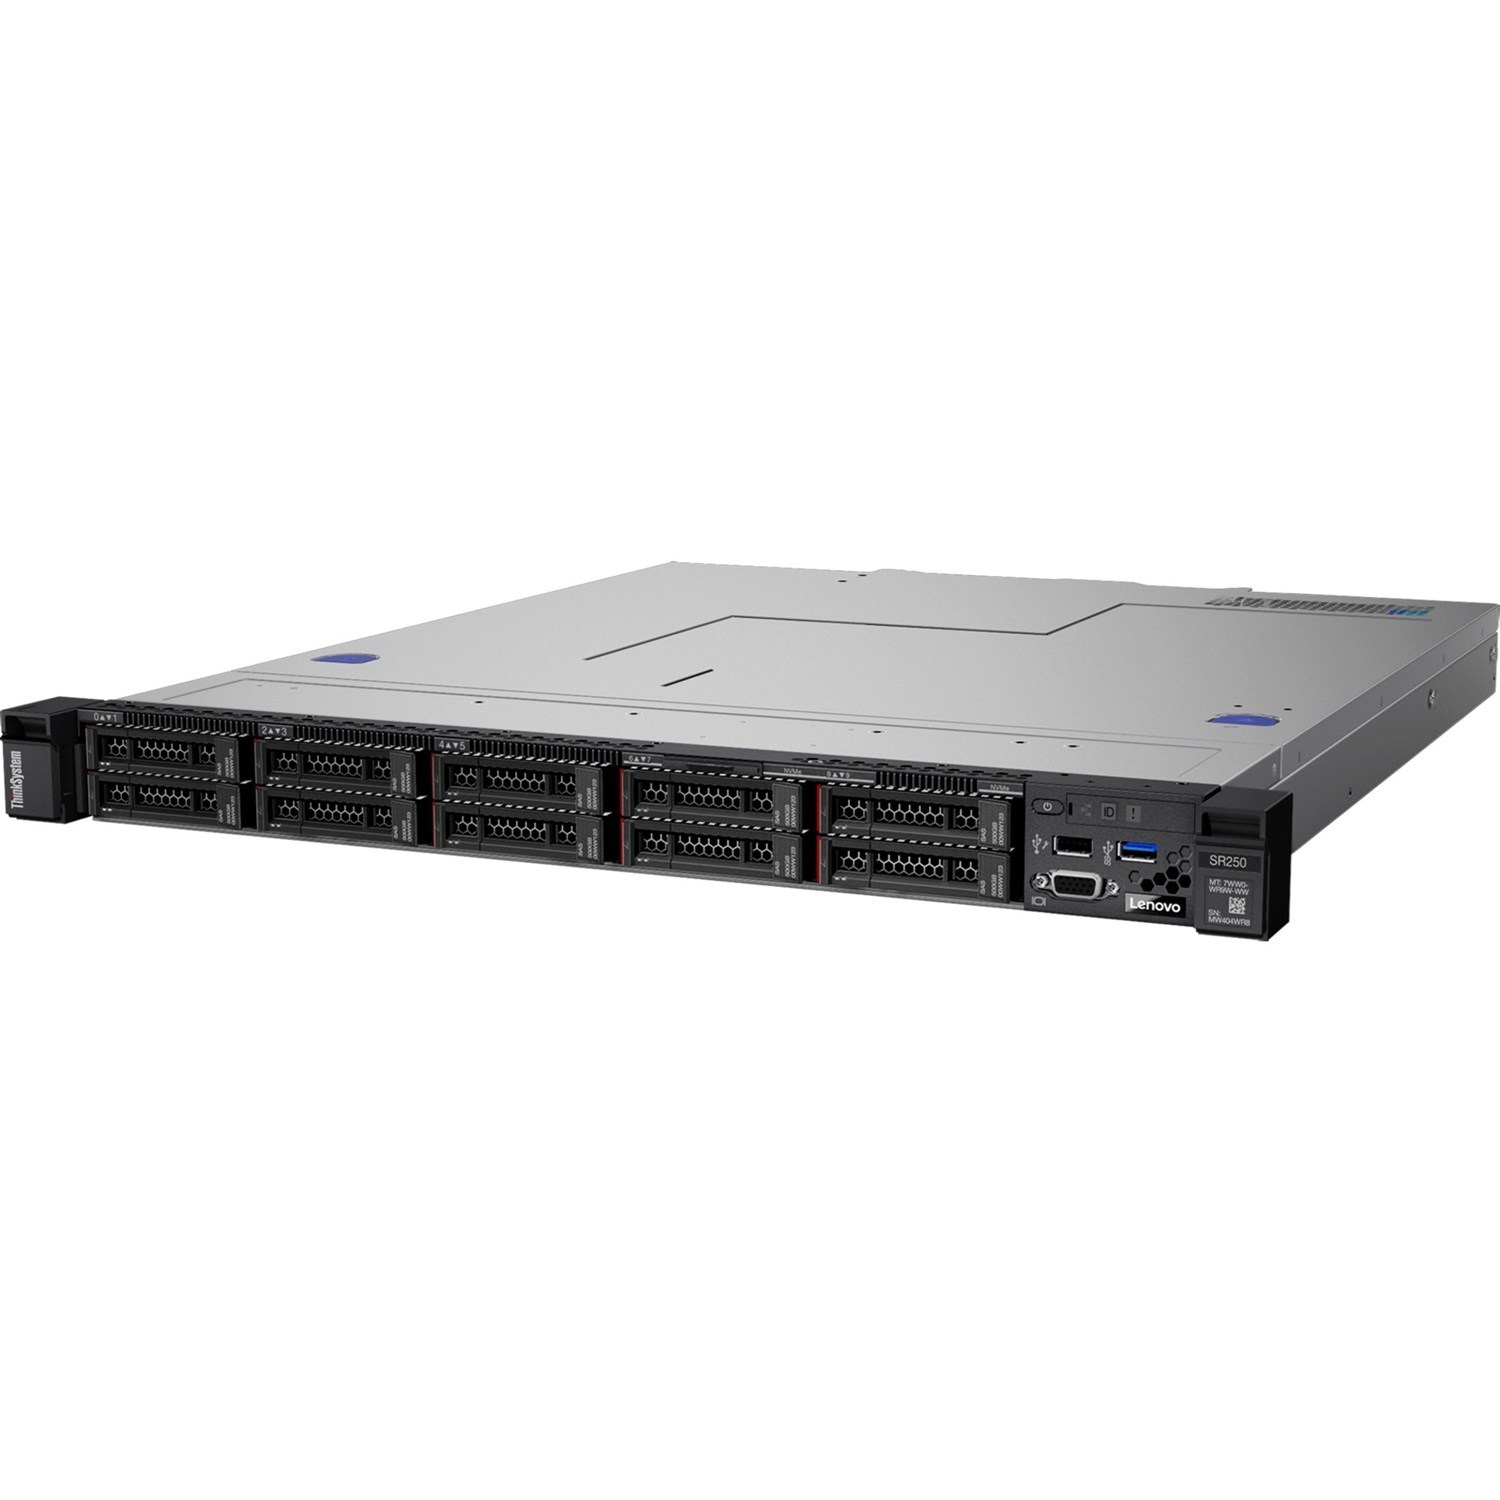 LENOVO ThinkSystem SR250 1U Rack Server, 1xIntel Xeon E-2144G 3.6GHz, 1 x16GB 2Rx8, SW RD, 8 x 2.5' HS Bays, 1x450W PSU, 3 Year Warranty